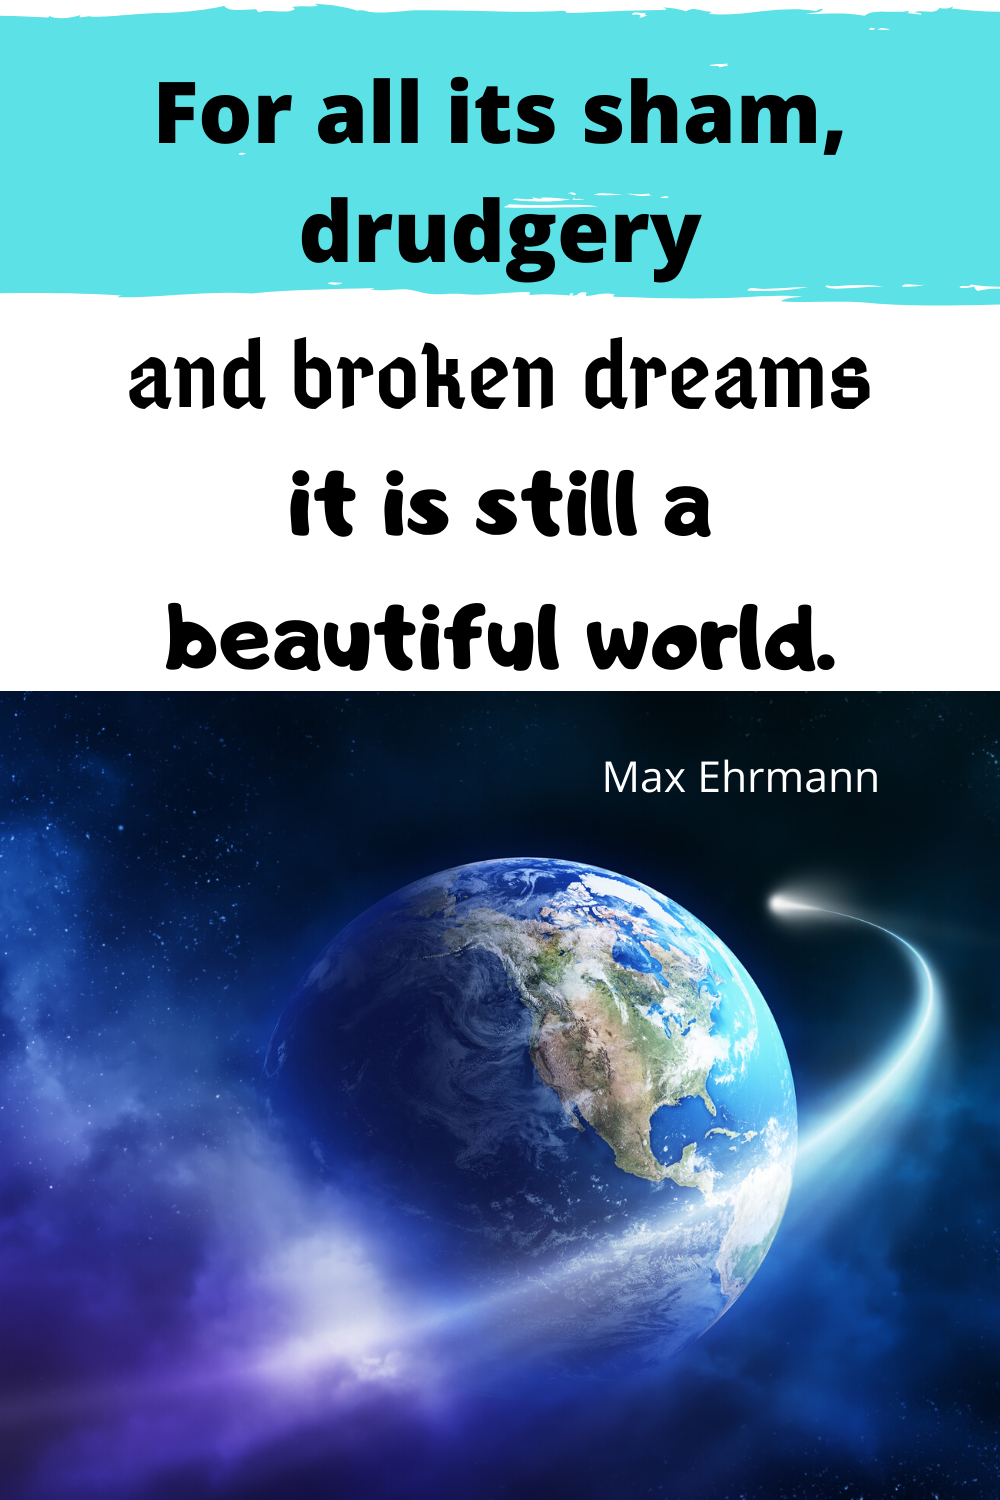 Max Ehrmann quotes